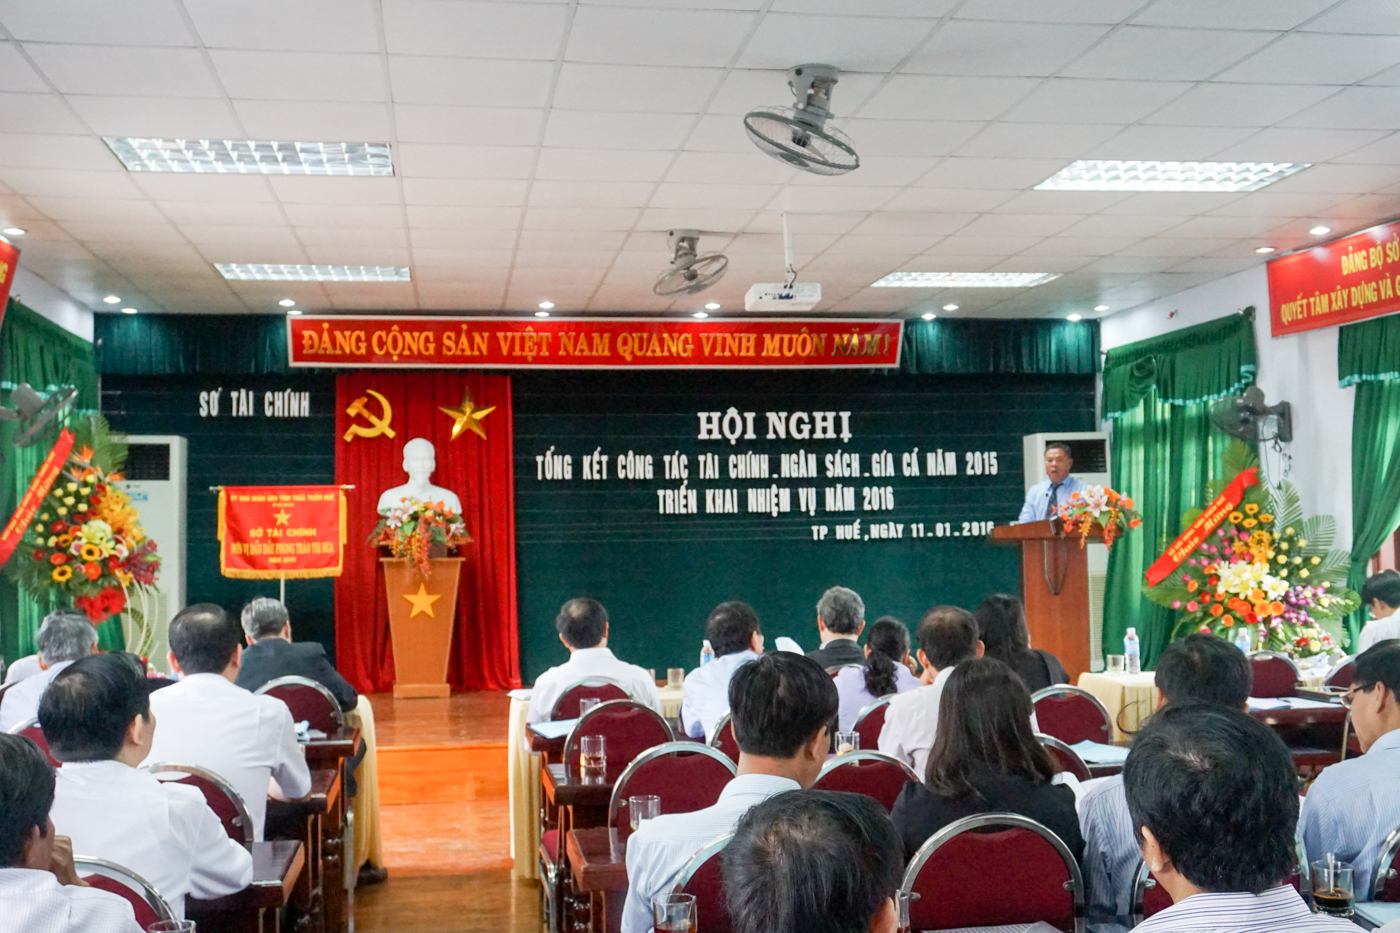 Đc Huỳnh Ngọc Sơn, Giám đốc Sỏ tài chính kết luận Hội nghị